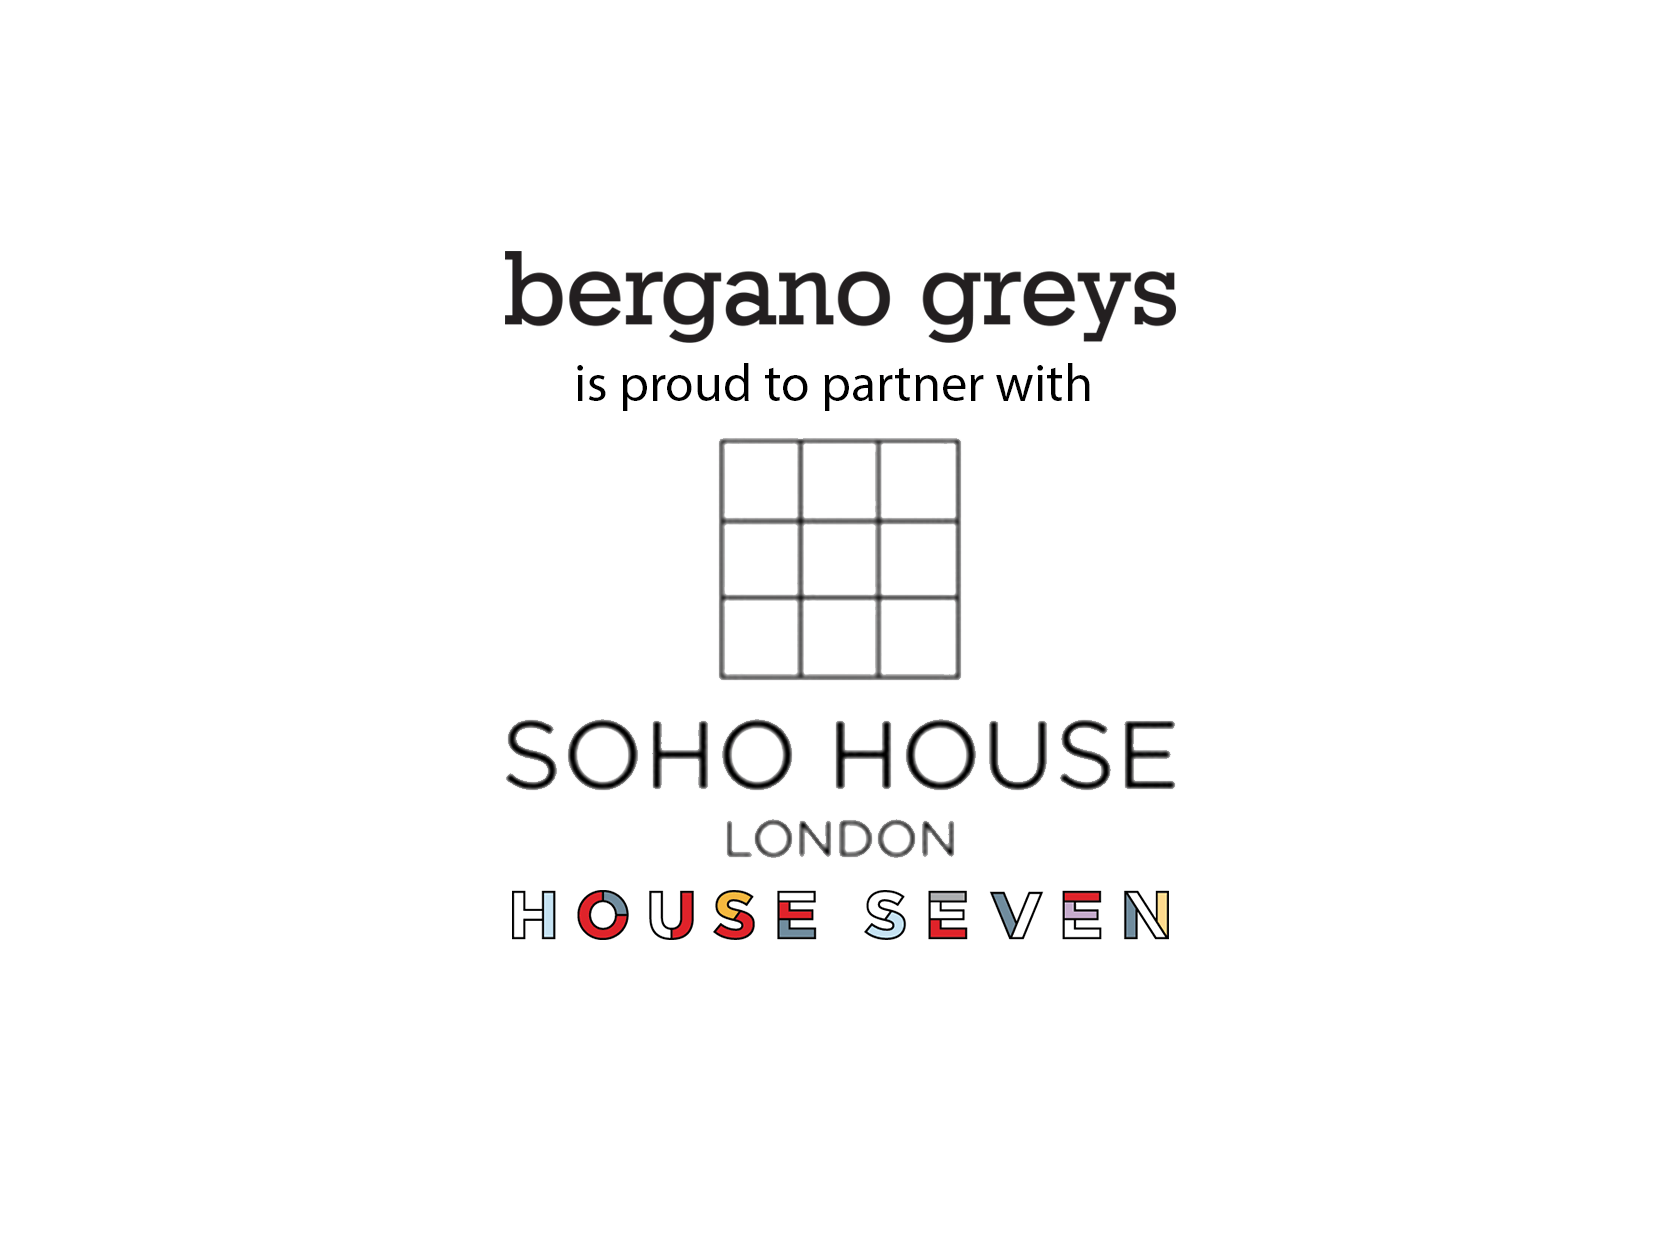 Grey's Logo - bergano greys logo a team leading and a partner of soho house